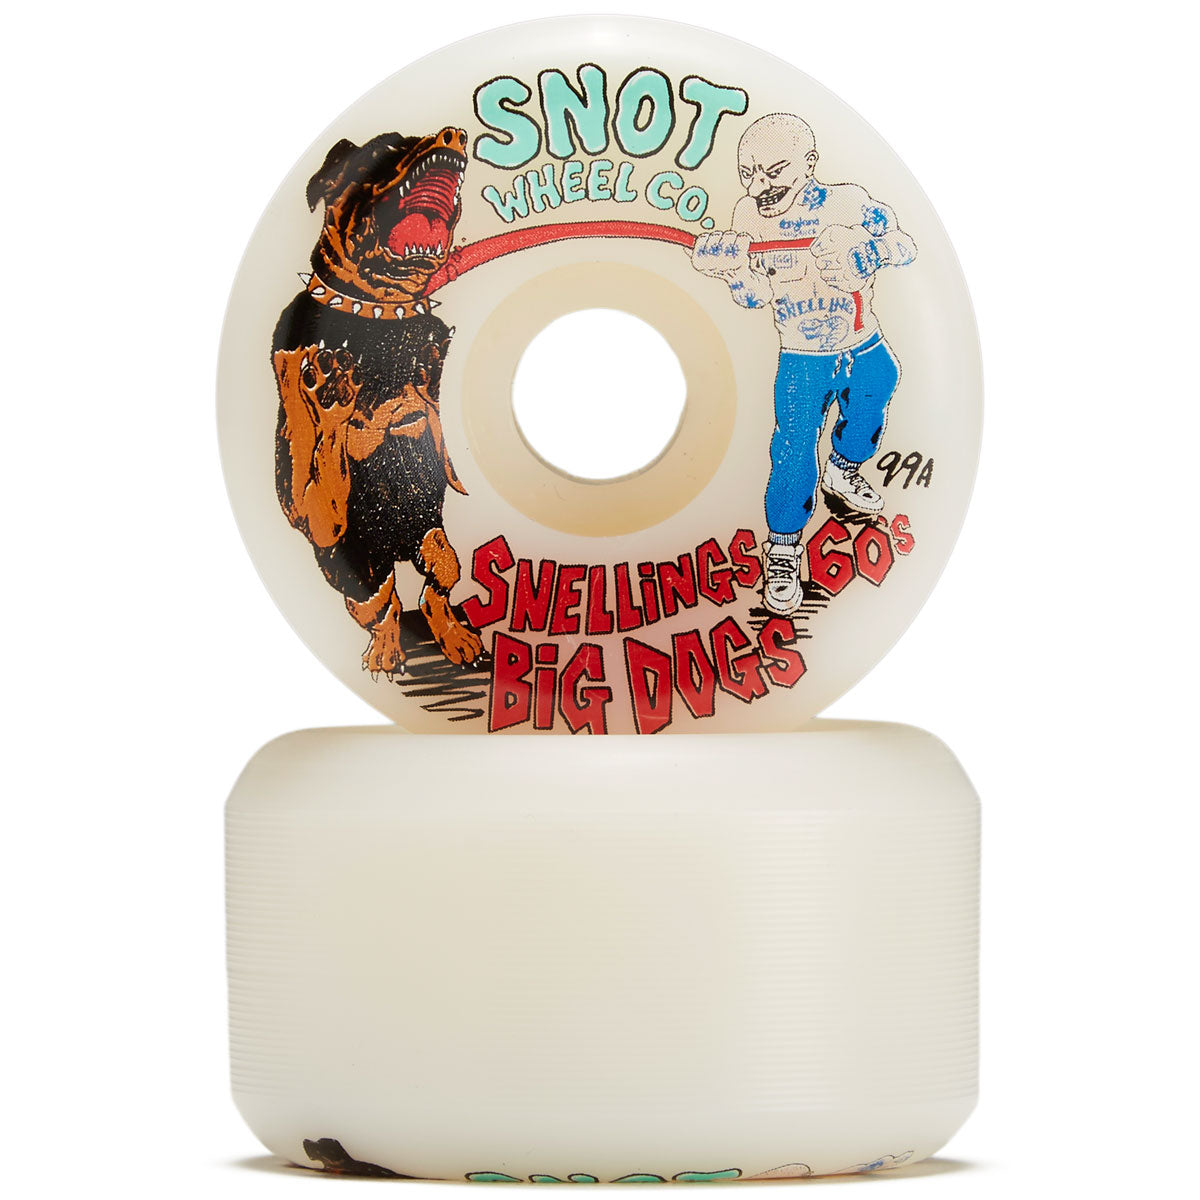 Snot Snellings Big Dogs Skateboard Wheels - 60mm image 2